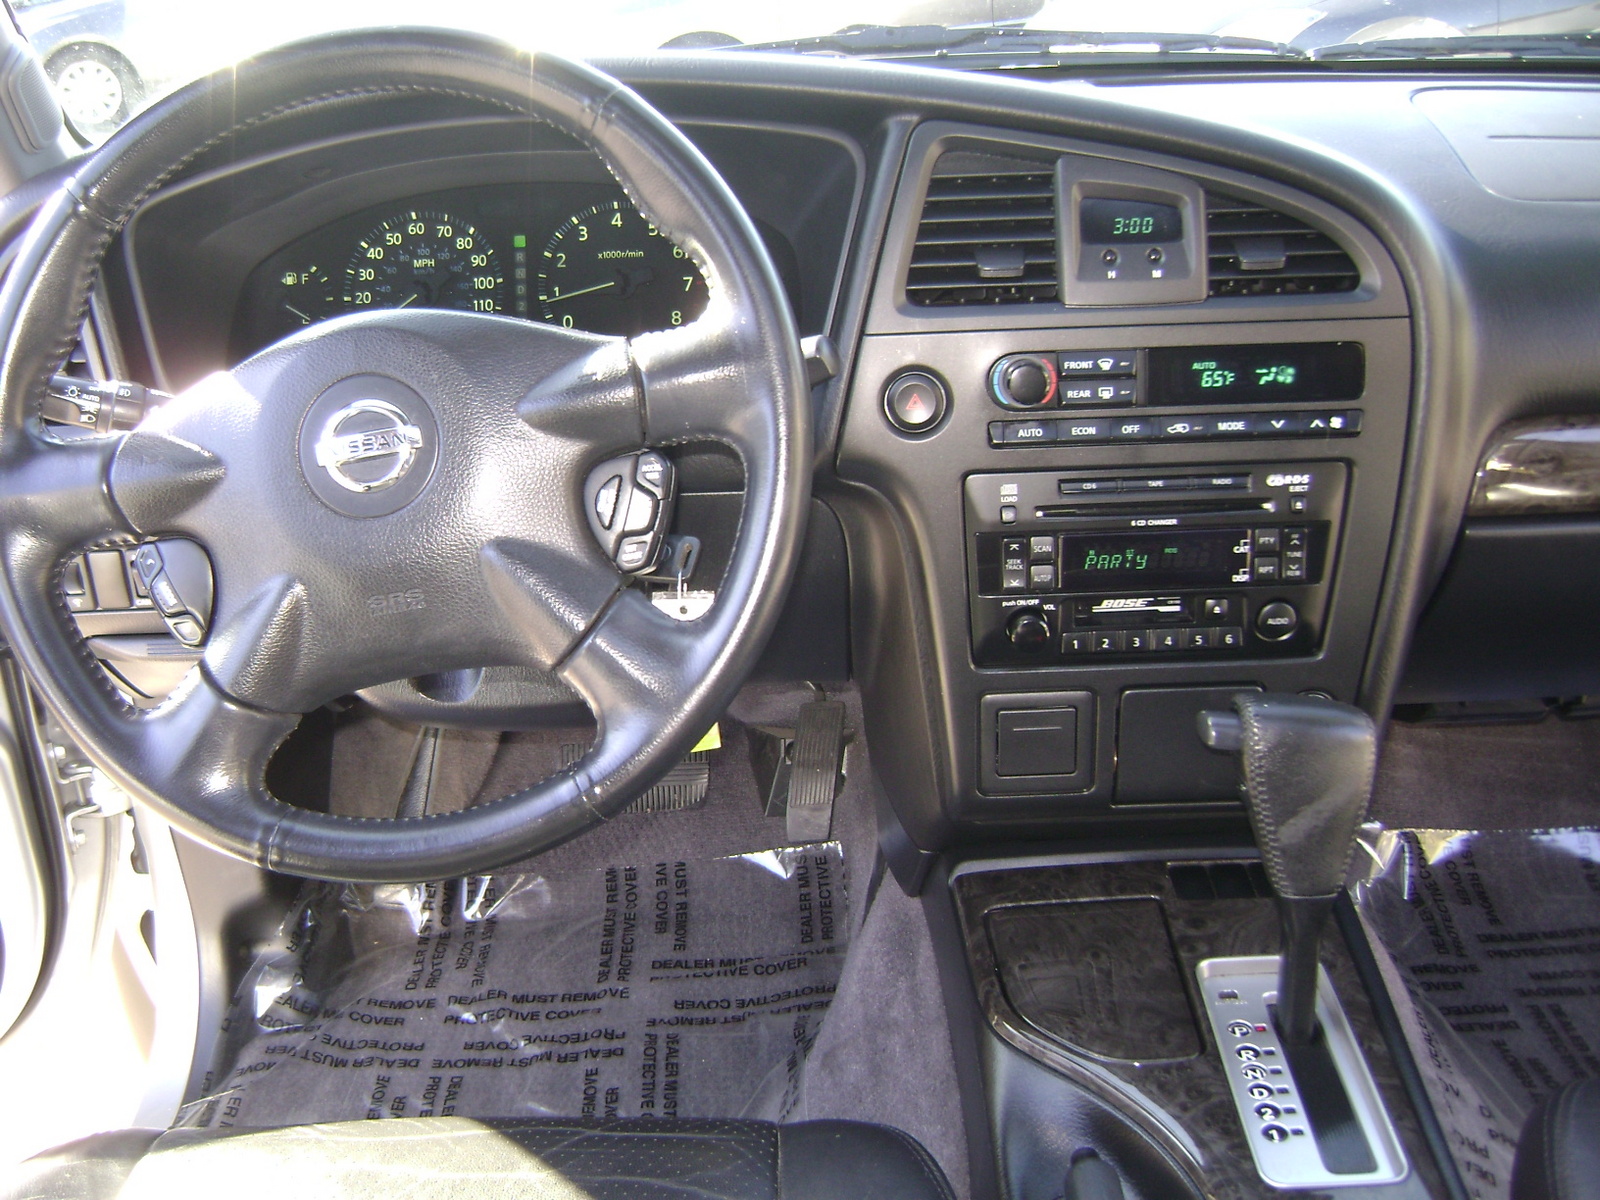 2004 Nissan pathfinder interior pictures #9